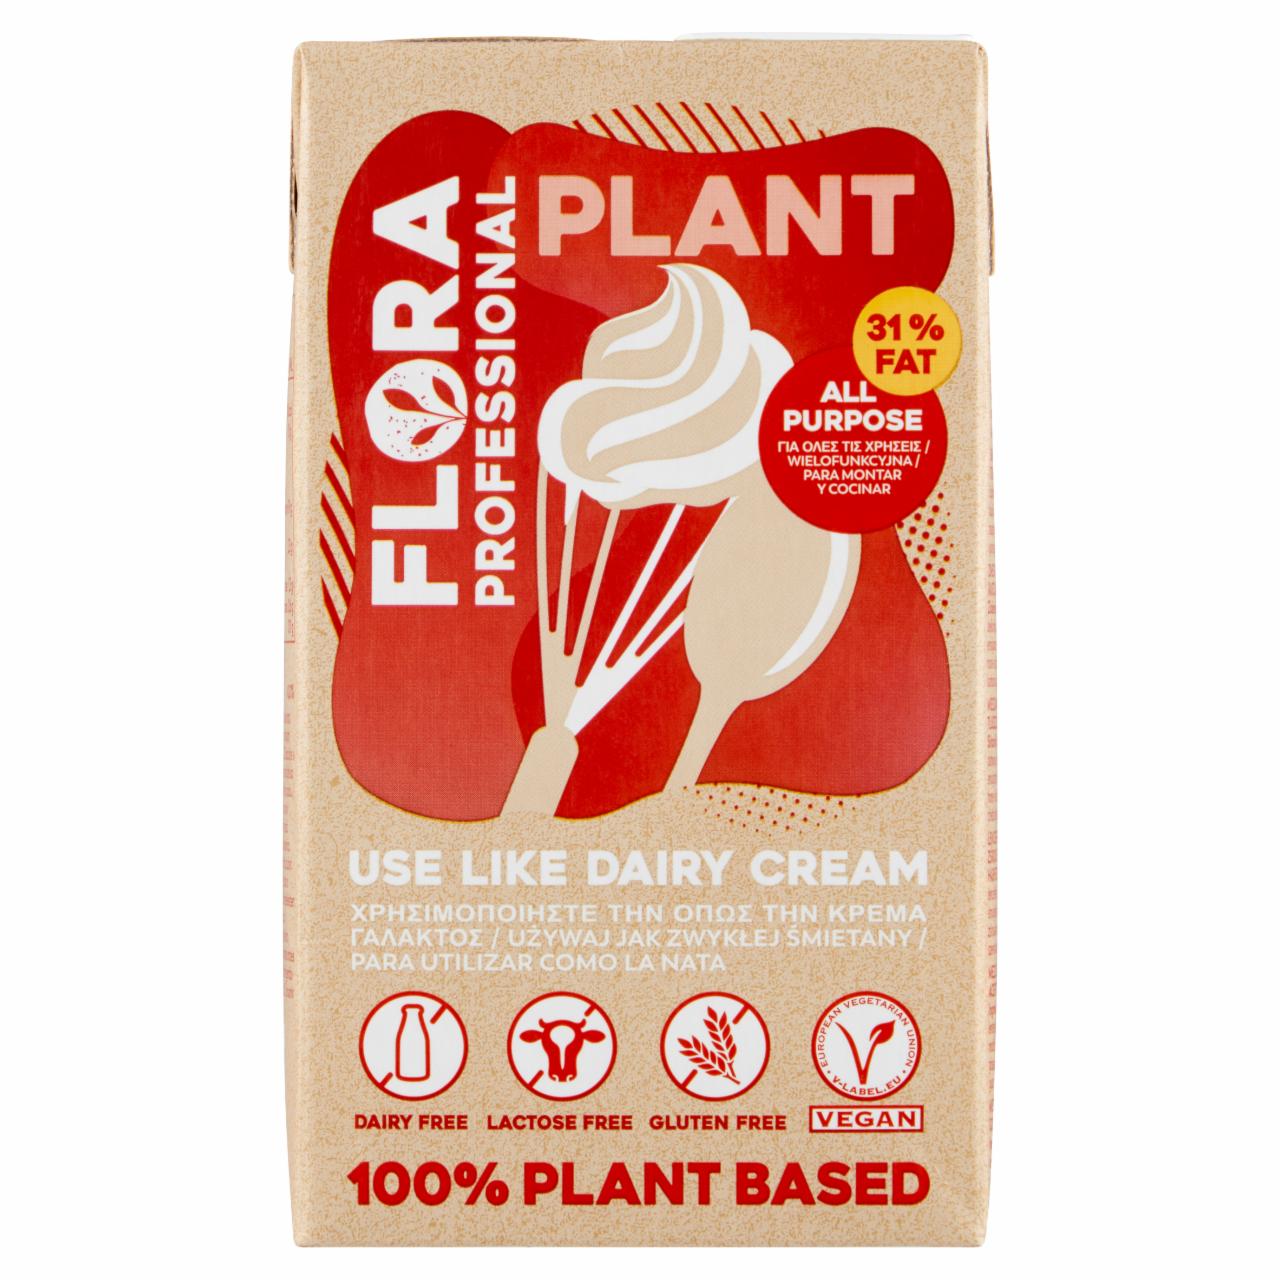 Zdjęcia - Flora Professional Plant Mieszanka roztworu białka soczewicy olejów i tłuszczów roślinnych 31% 1 l